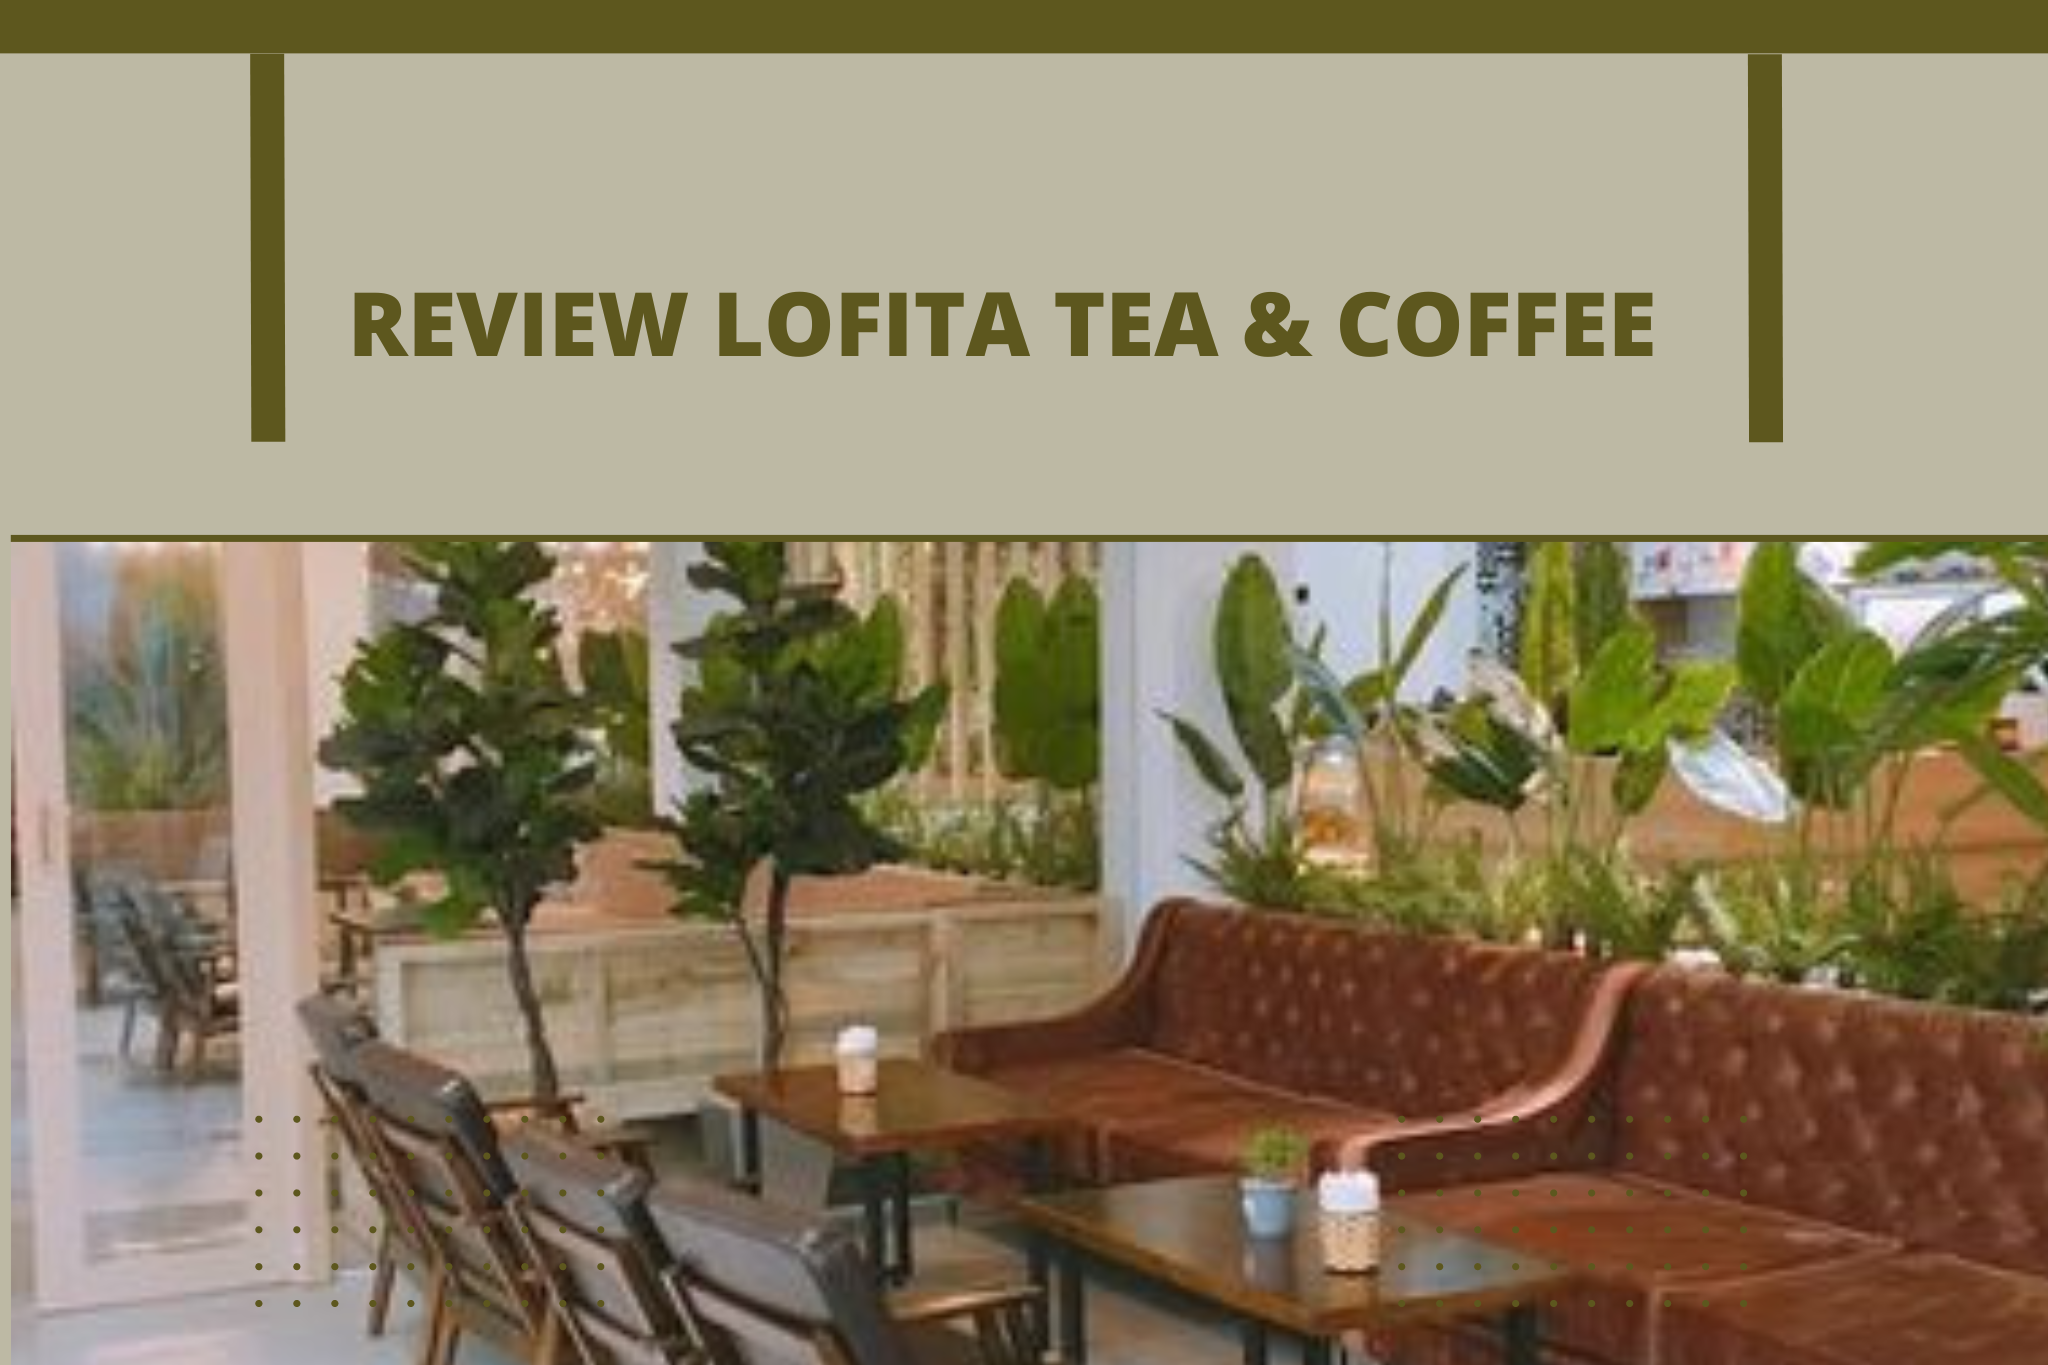 Lofita Tea & Coffee với thiết kế nội thất độc đáo và sáng tạo sẽ mang lại cảm giác thoải mái và thư giãn cho bạn trong một không gian yên tĩnh. Với cách sắp xếp không gian thông minh, các vật liệu và màu sắc đúng chất Lofita, bạn sẽ cảm thấy như đang ở trong một trang trại xanh mát. Hãy xem những hình ảnh tuyệt đẹp và trải nghiệm đẳng cấp cùng Lofita Tea & Coffee!